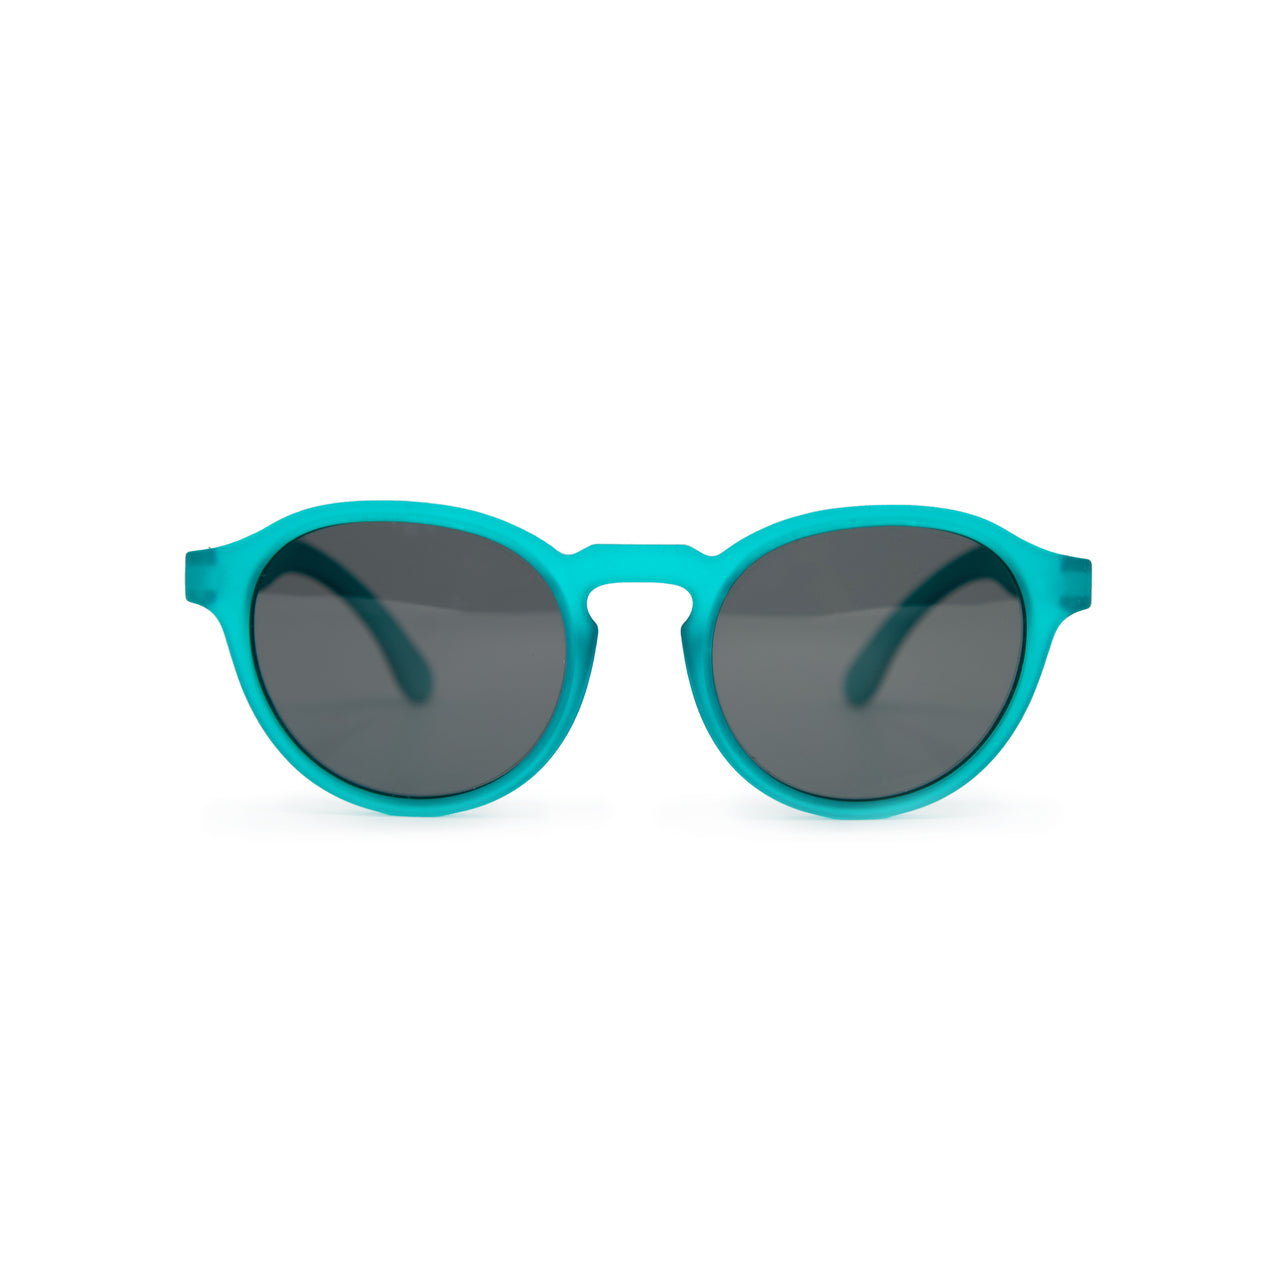 Teal Me a Secret - Teal Round Frame Sunglasses for Kids (Pre-Order)